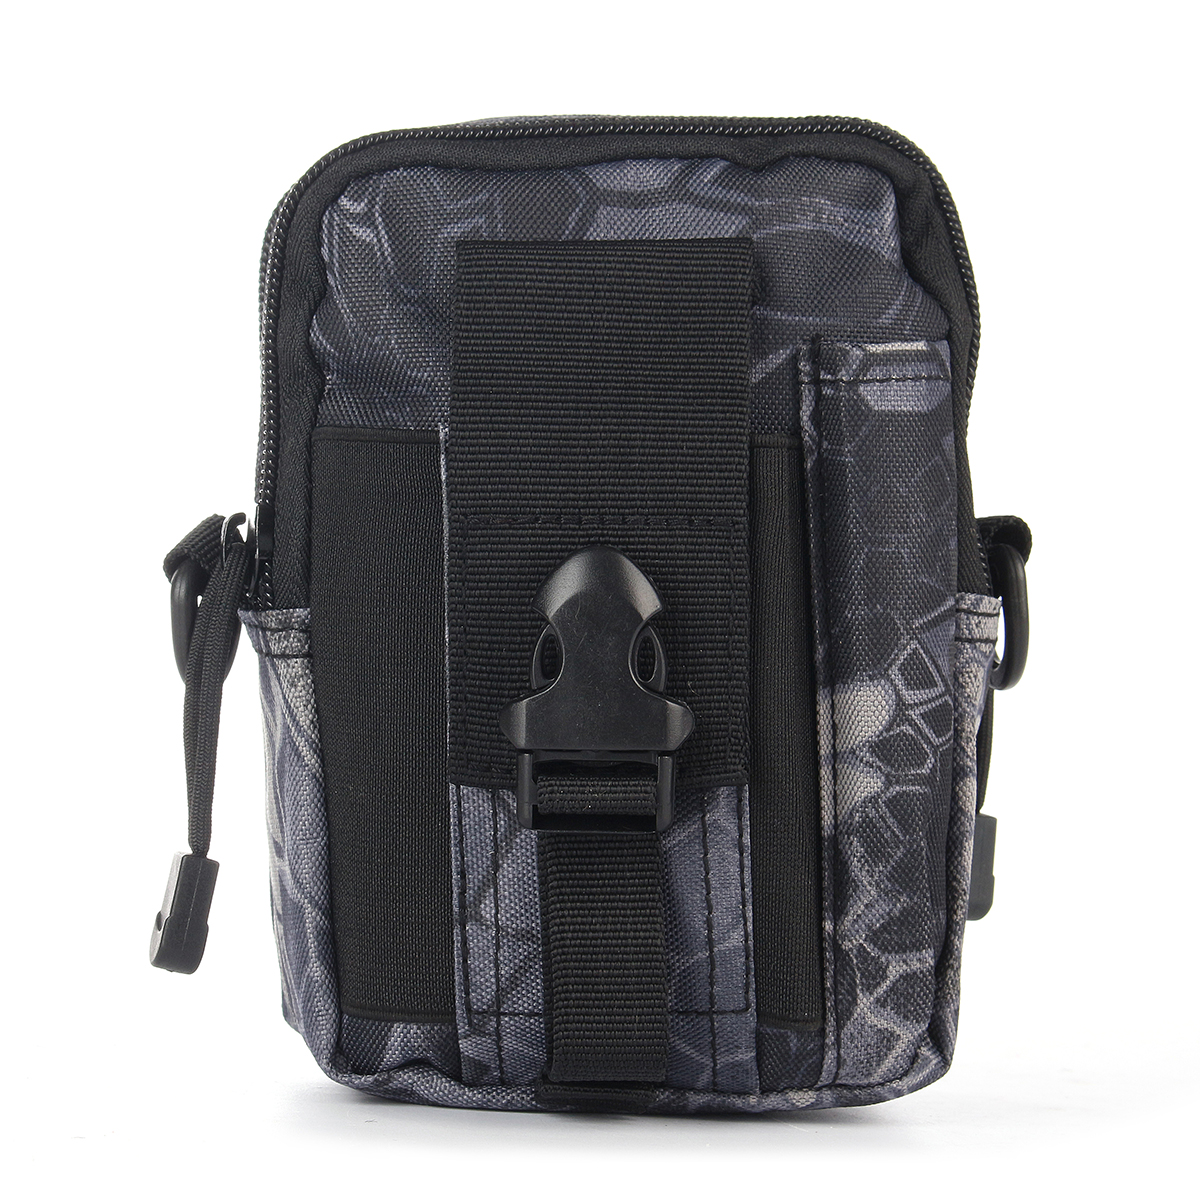 Waterproof-Tactical-Waist-Bag-Belt-Pouch-Hiking-Camp-Phone-Pocket-Waist-Shoulder-Bags-1817226-7